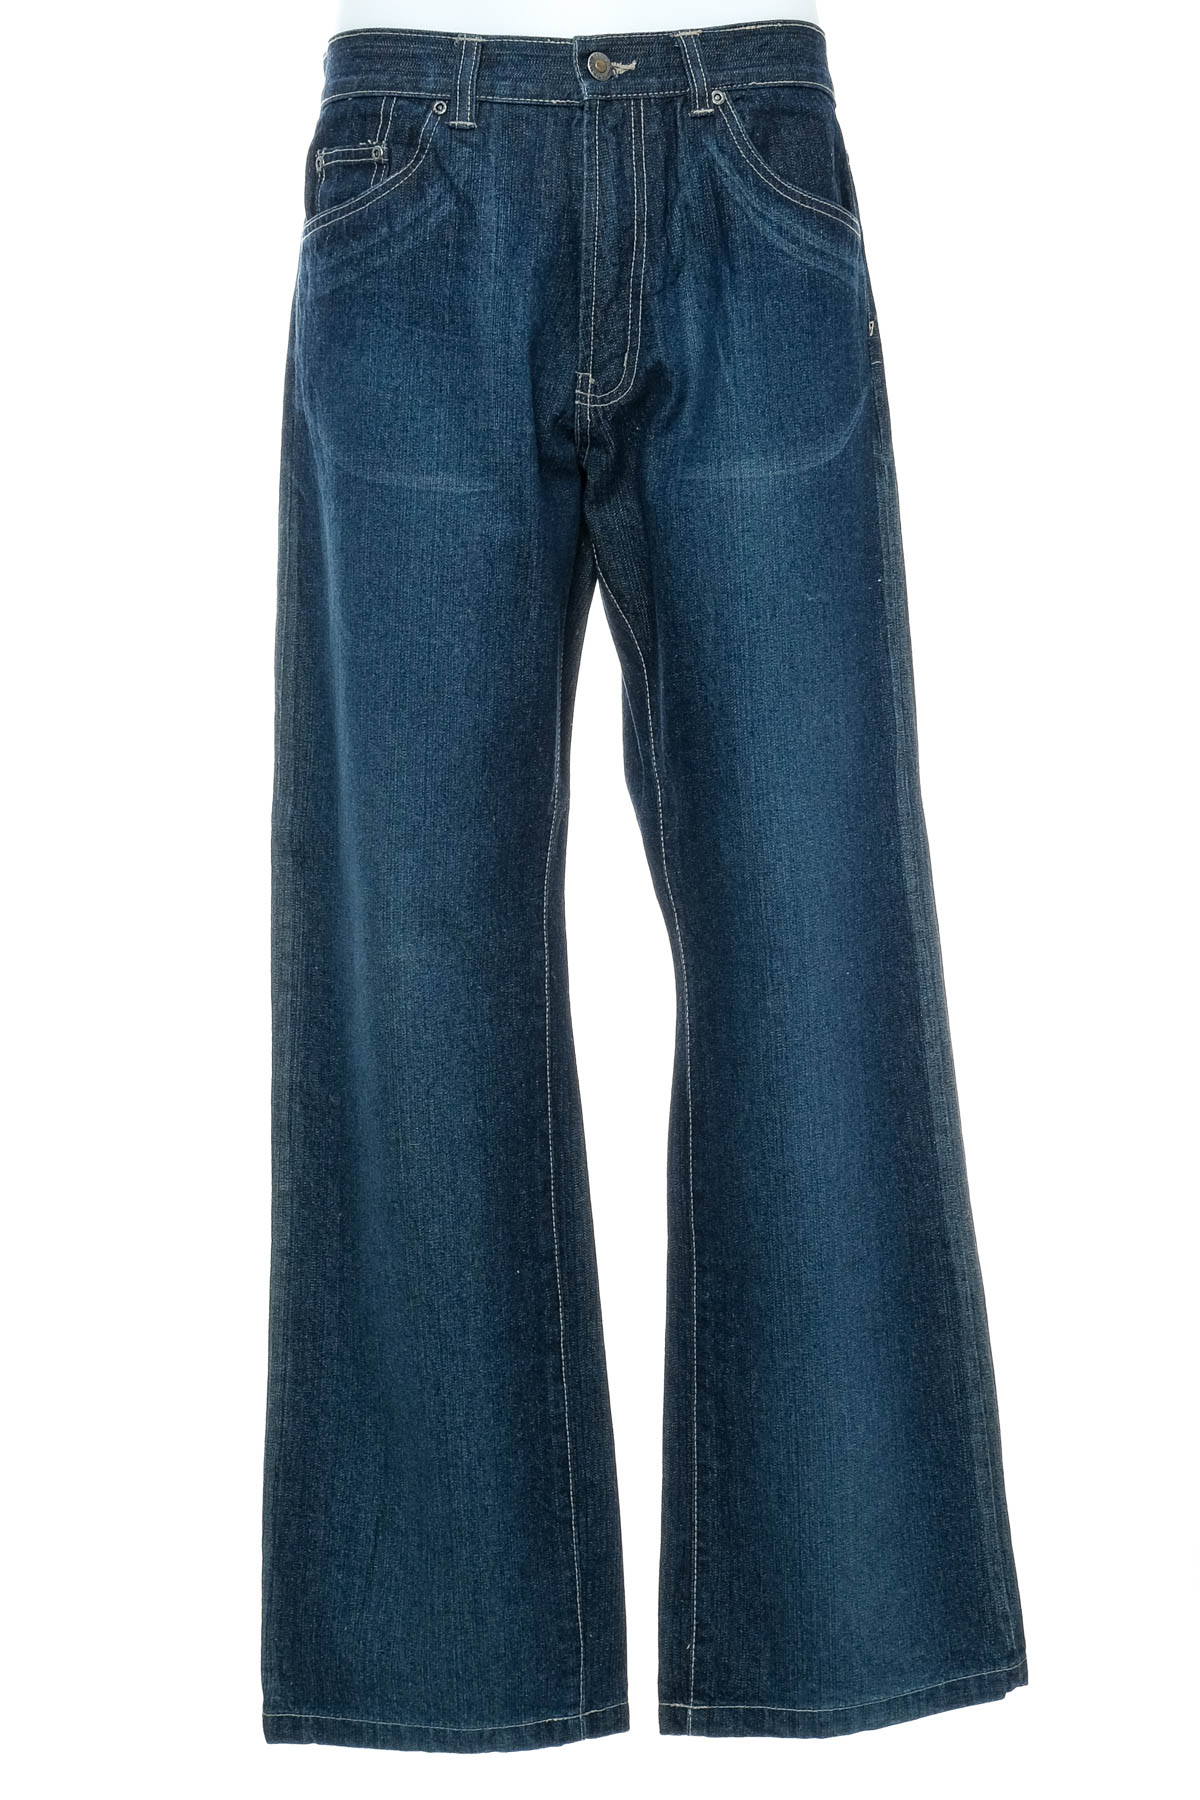 Jeans pentru bărbăți - Biaggini - 0